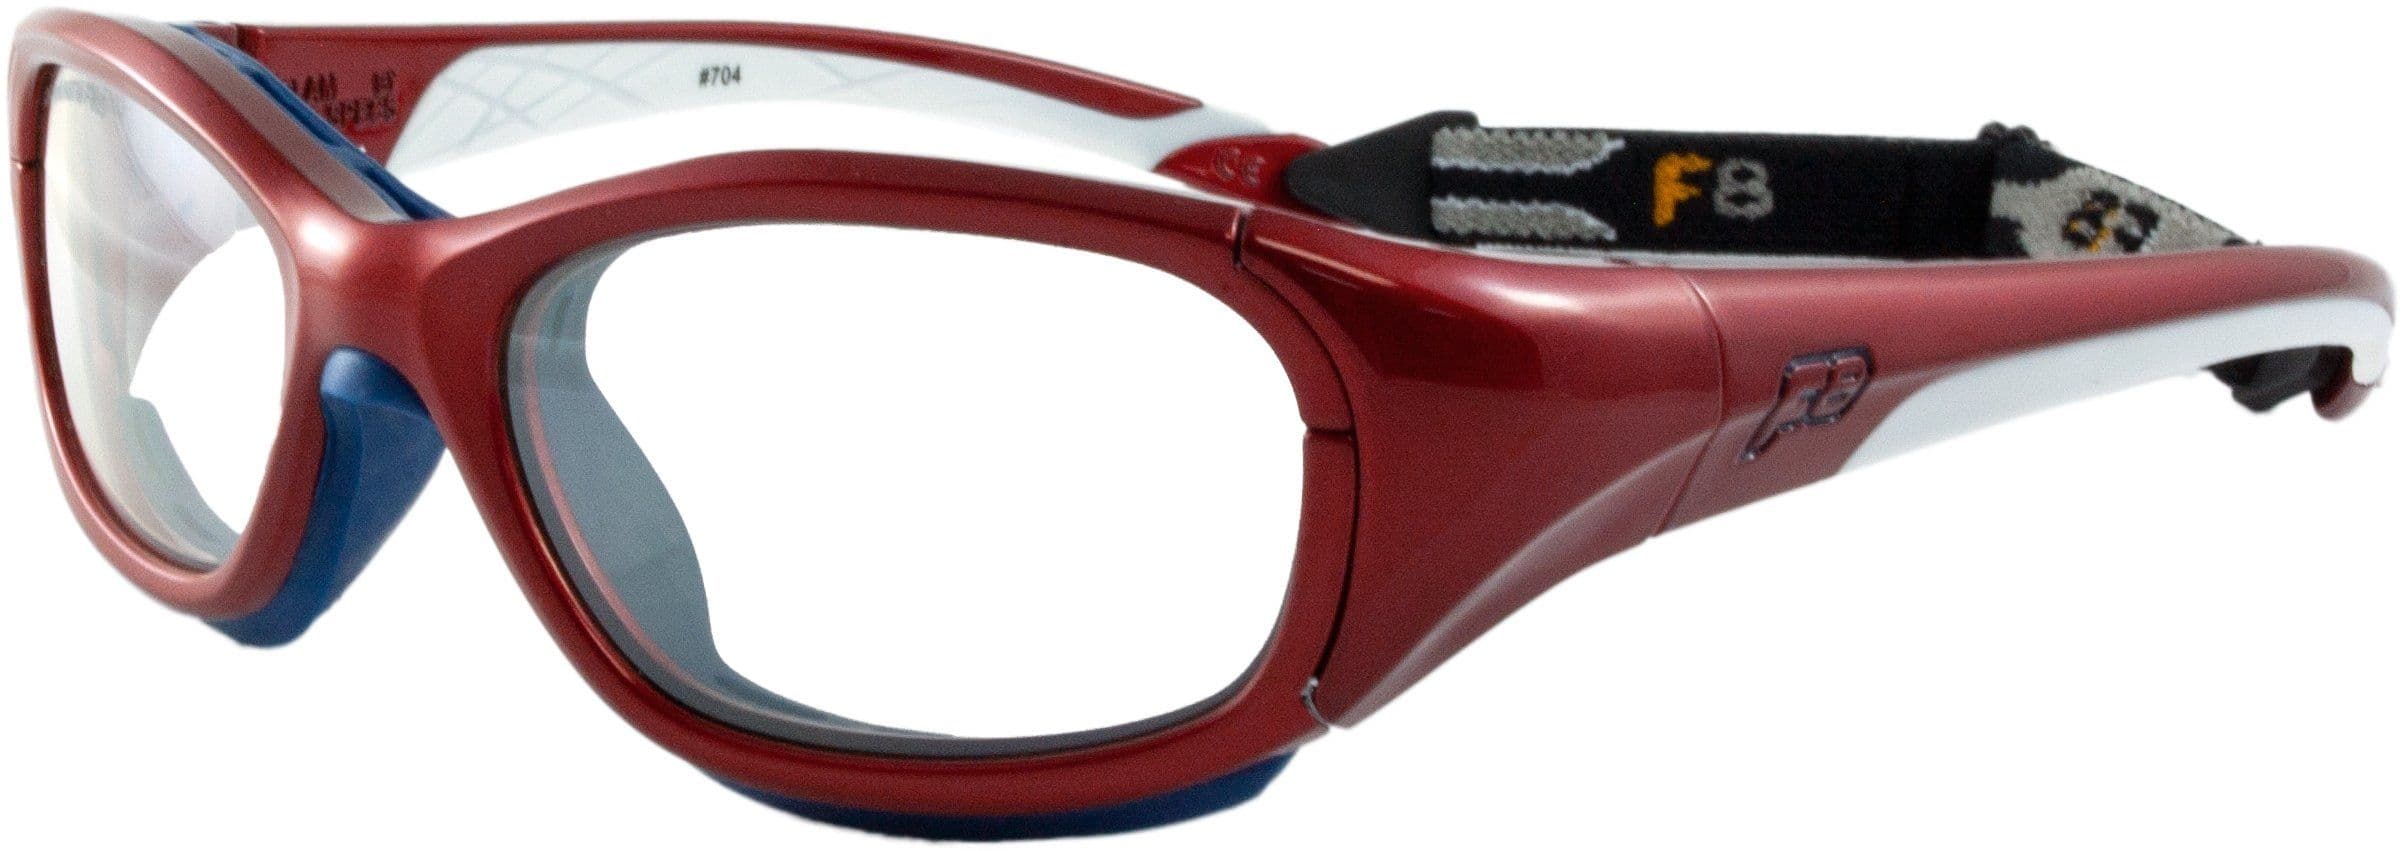 LS Rec-Specs F8 Slam Patriot ASTM Sports Glasses